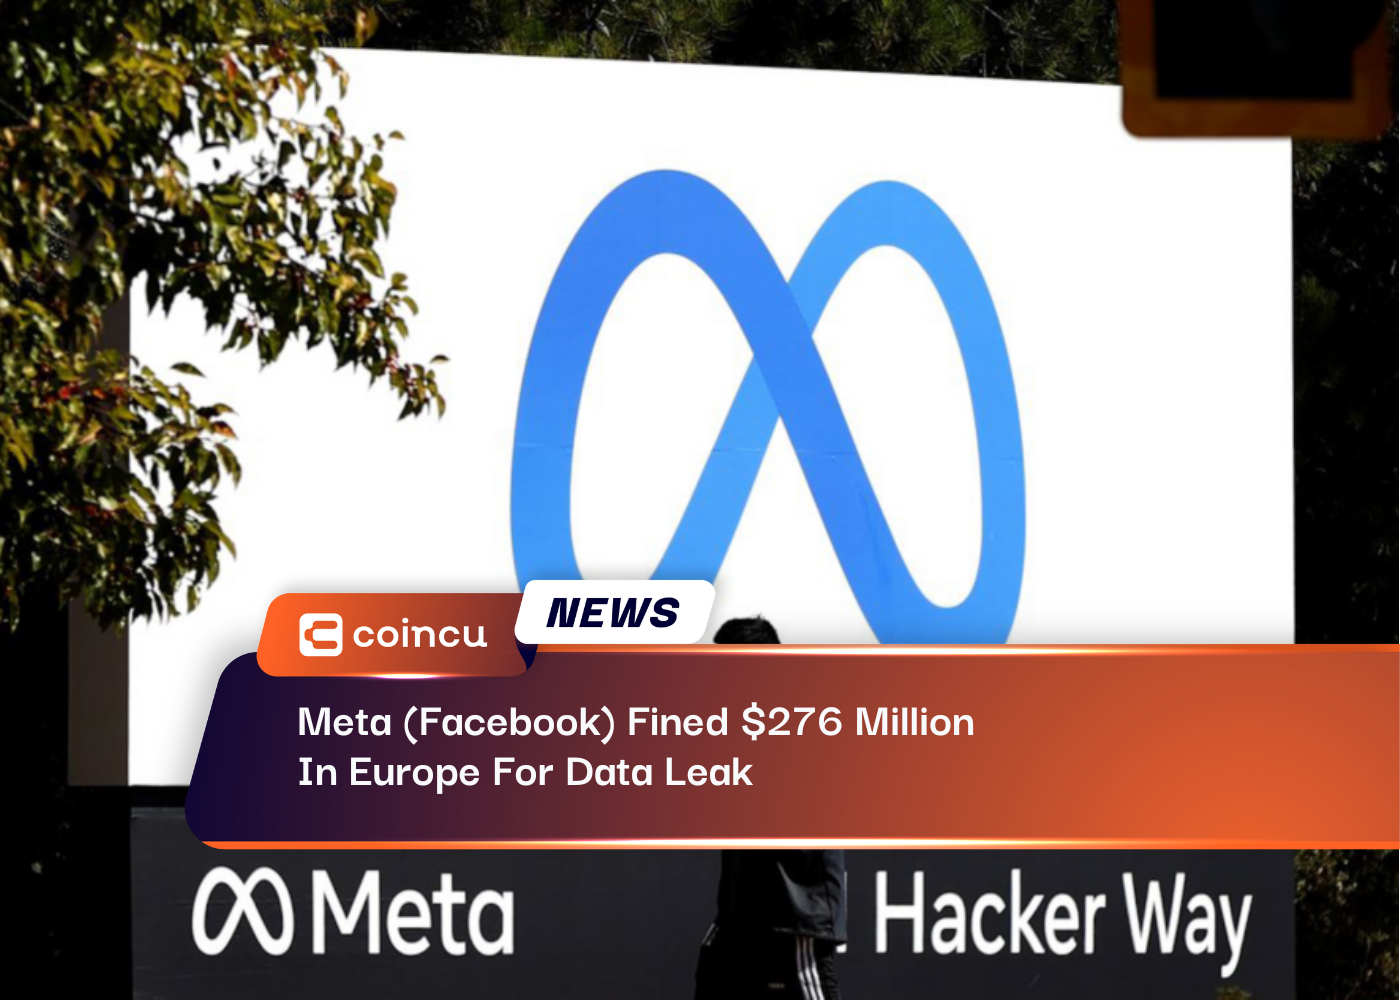 تم تغريم شركة Meta (Facebook) مبلغ 276 مليون دولار في أوروبا بسبب تسرب البيانات